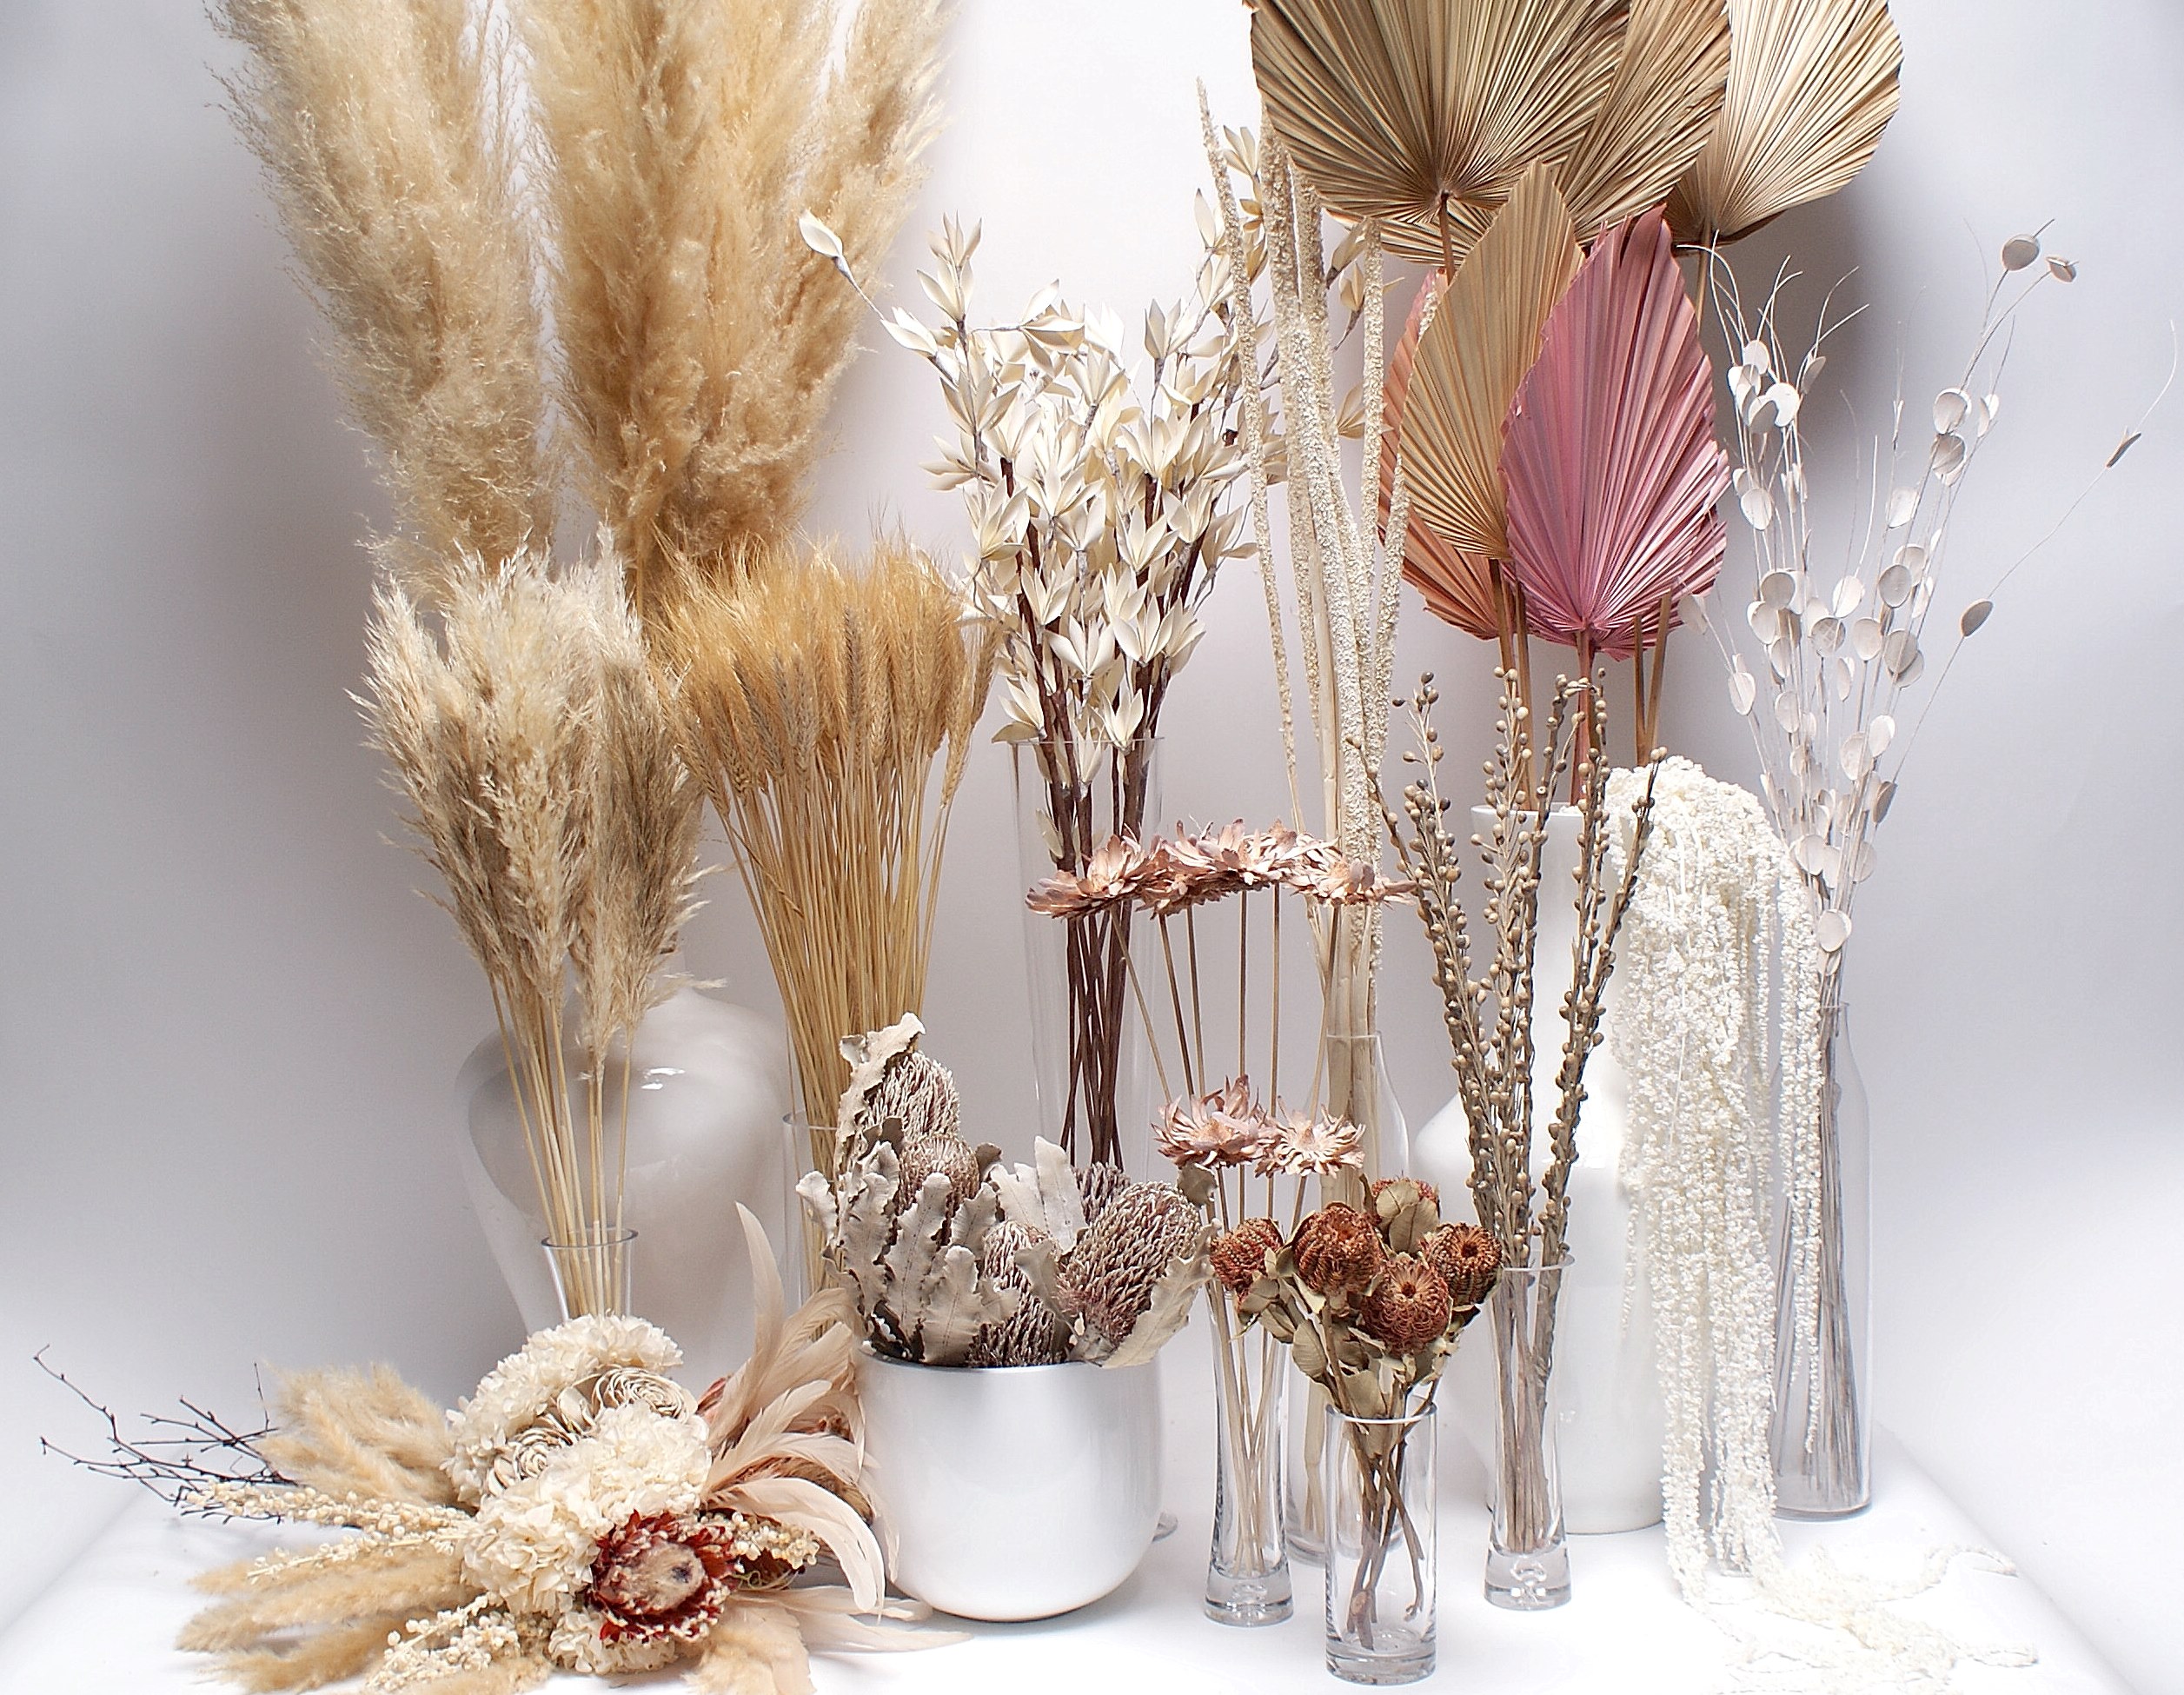 Botanico Contemporary Home Decor Products Planters Glass Vases Dried Florals Floral Arrangements